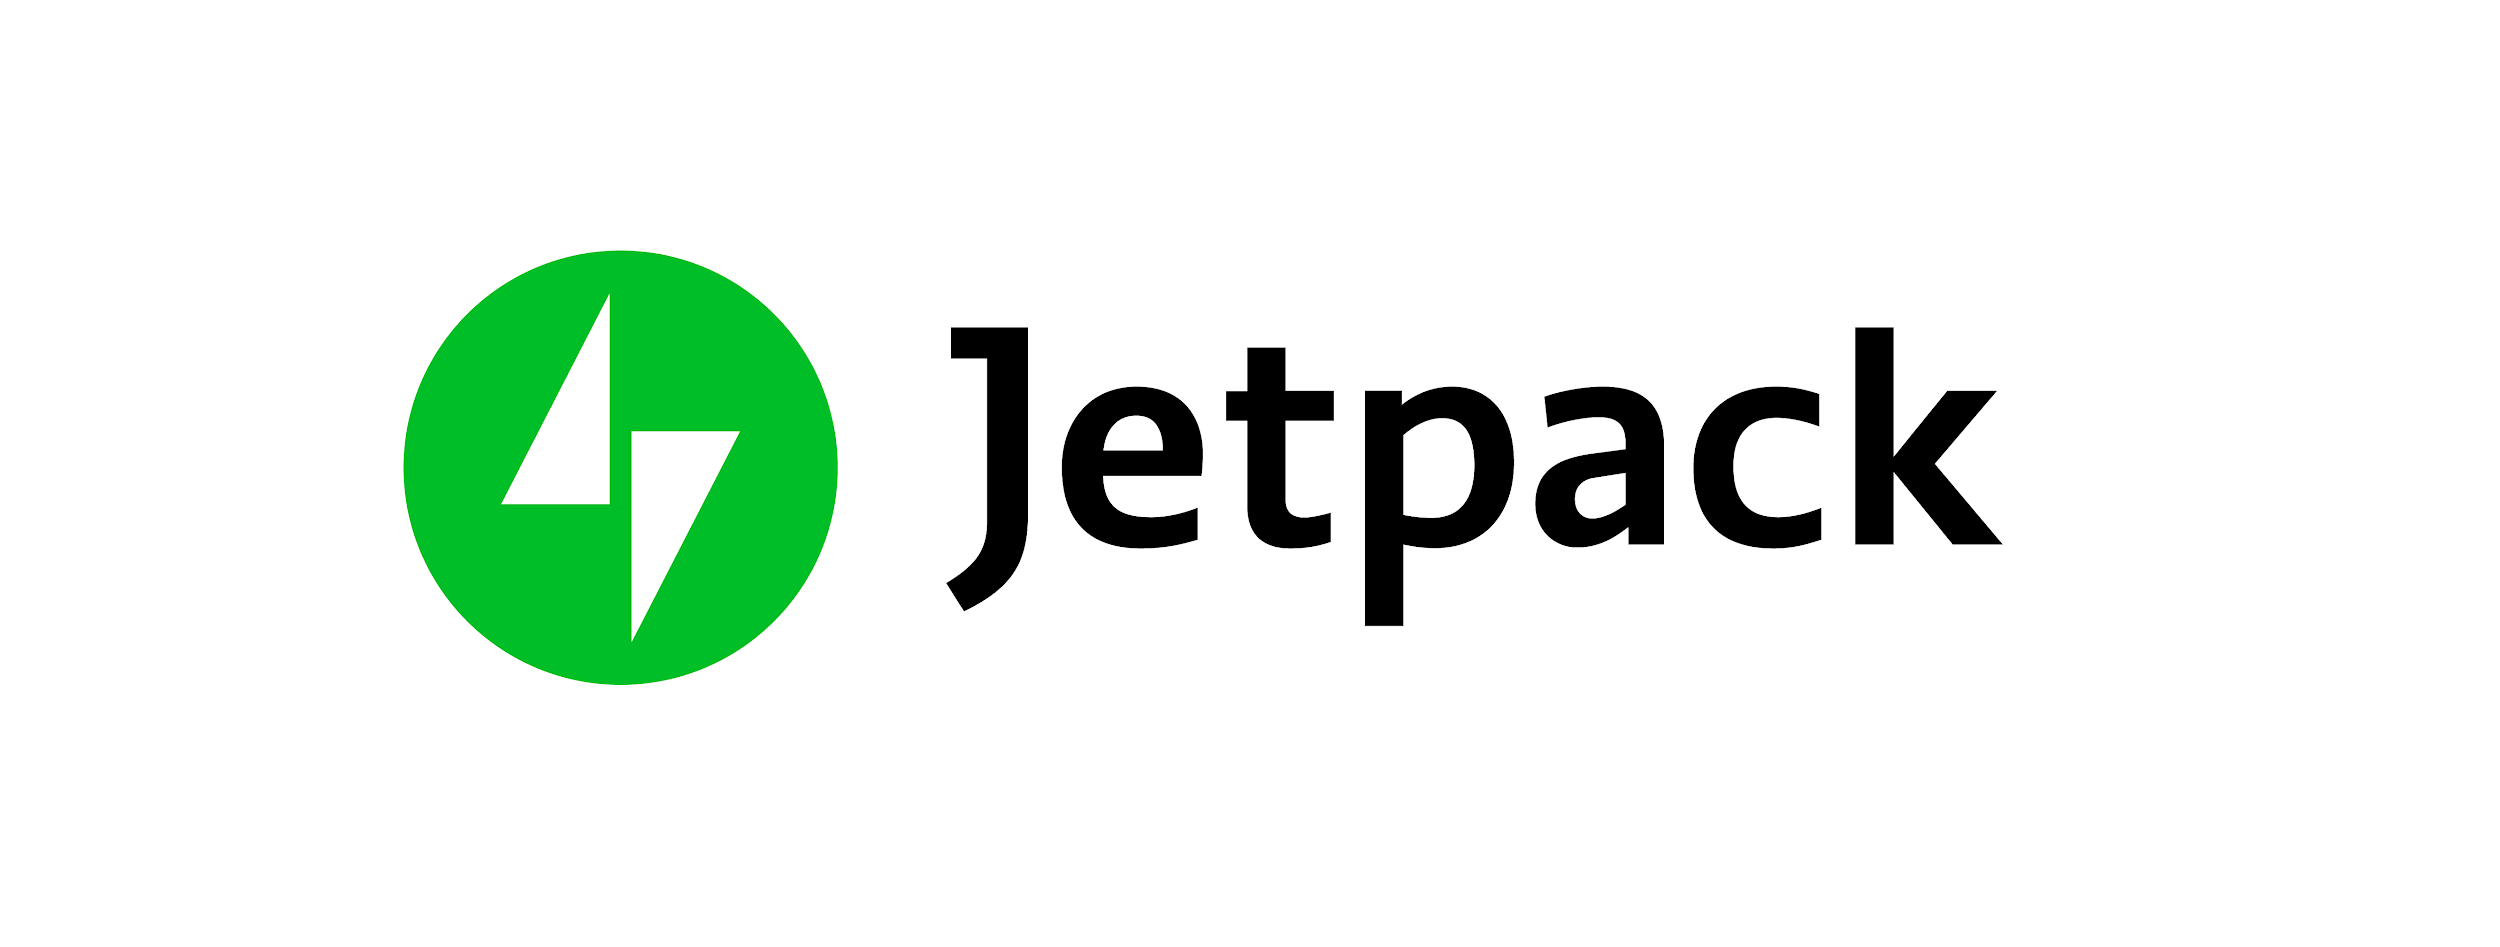 Logotipo de Jetpack